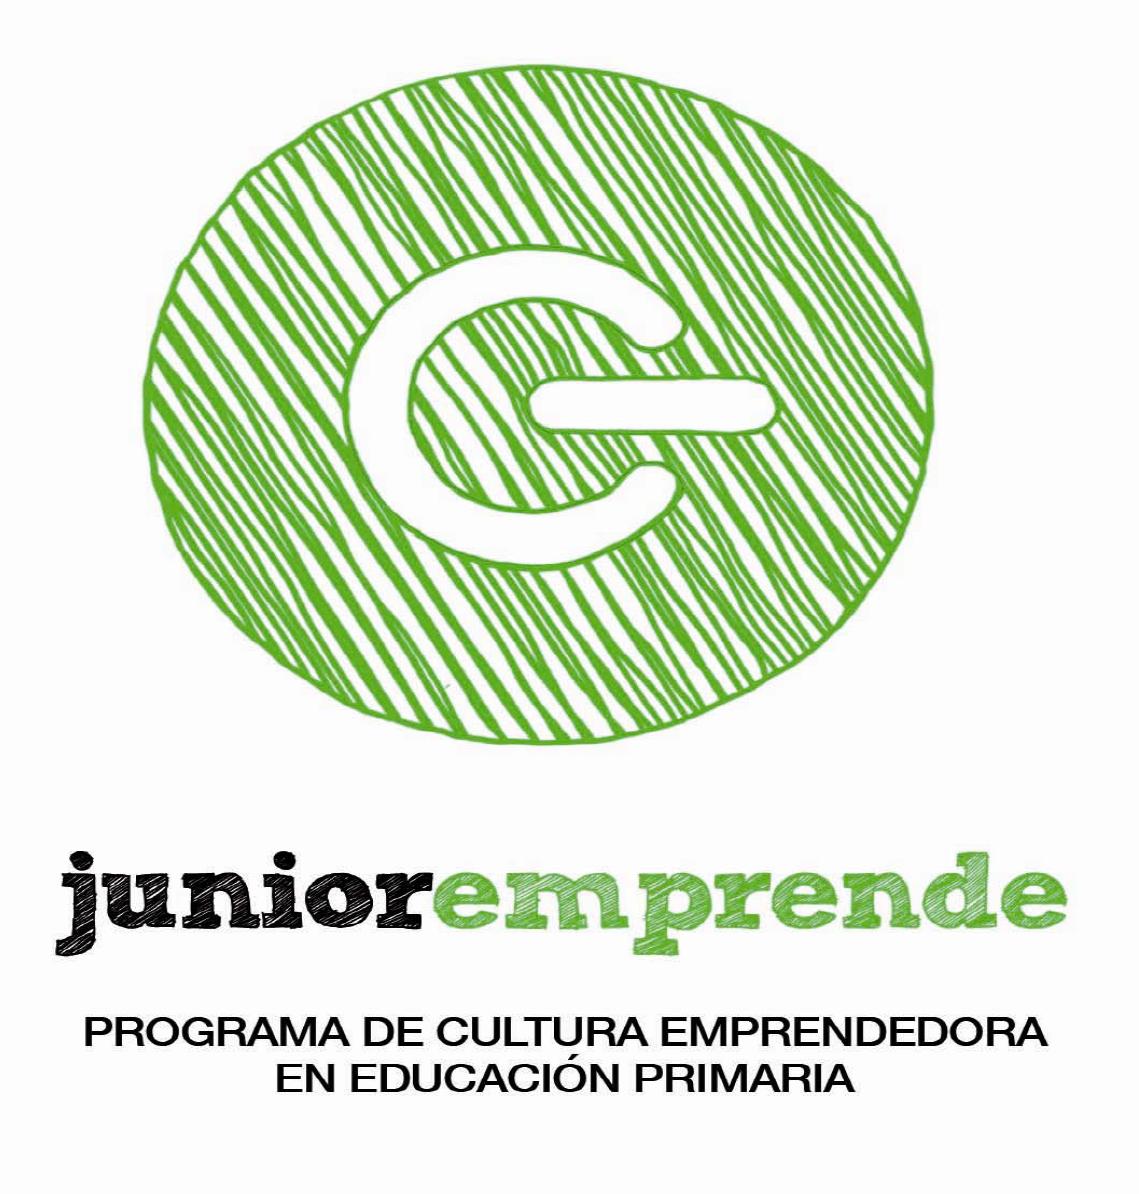 Las Cooperativas de Junior Emprende se presentan oficialmente el 8 de abril